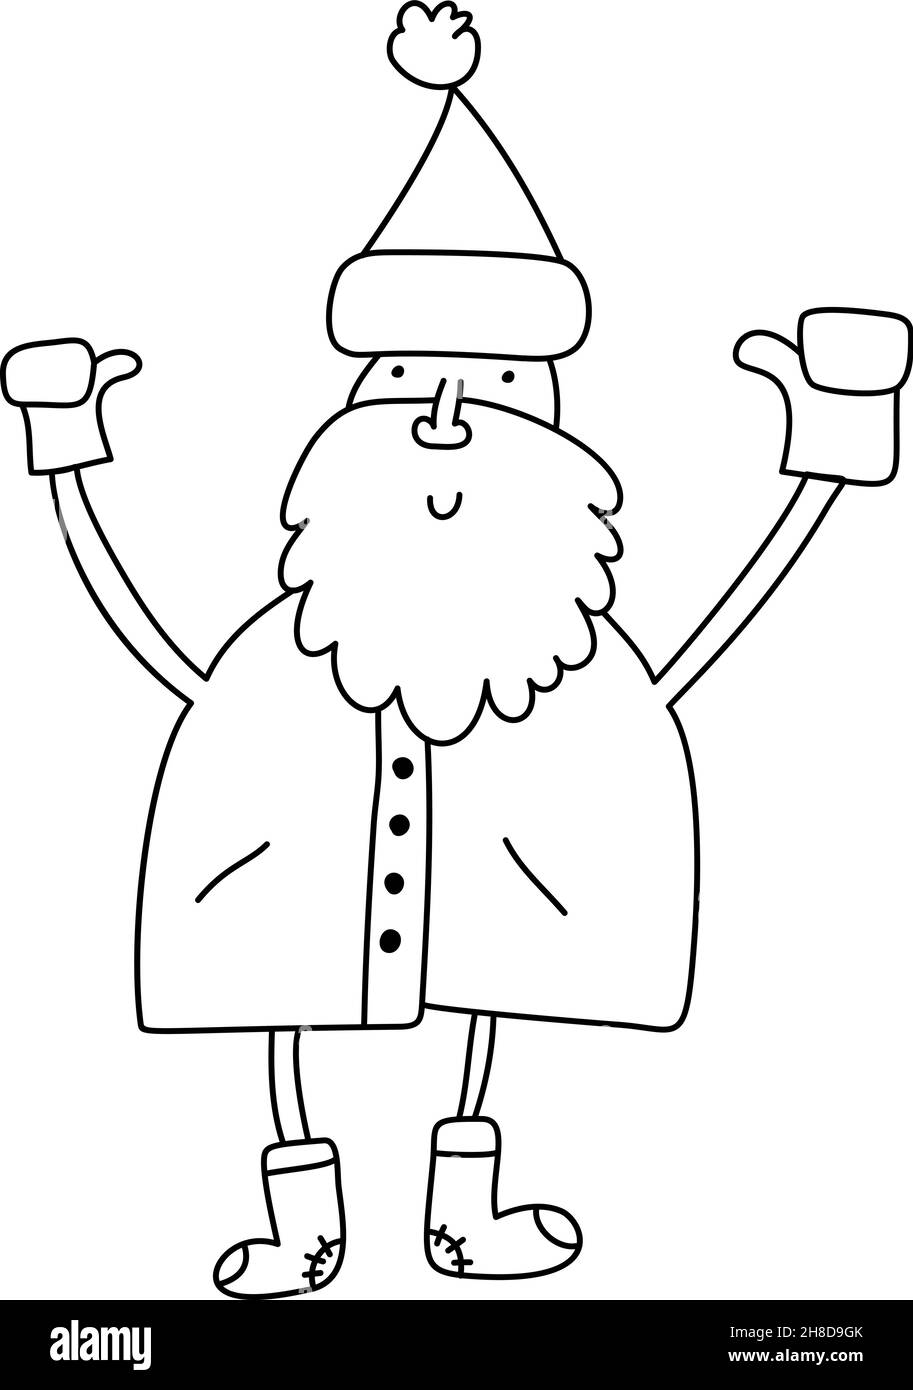 Lustige Cartoon Vektor Monoline Santa Claus. Handgezeichnete Illustration für Weihnachts- und Neujahrsplakate, Geschenkanhänger und Etiketten Stock Vektor